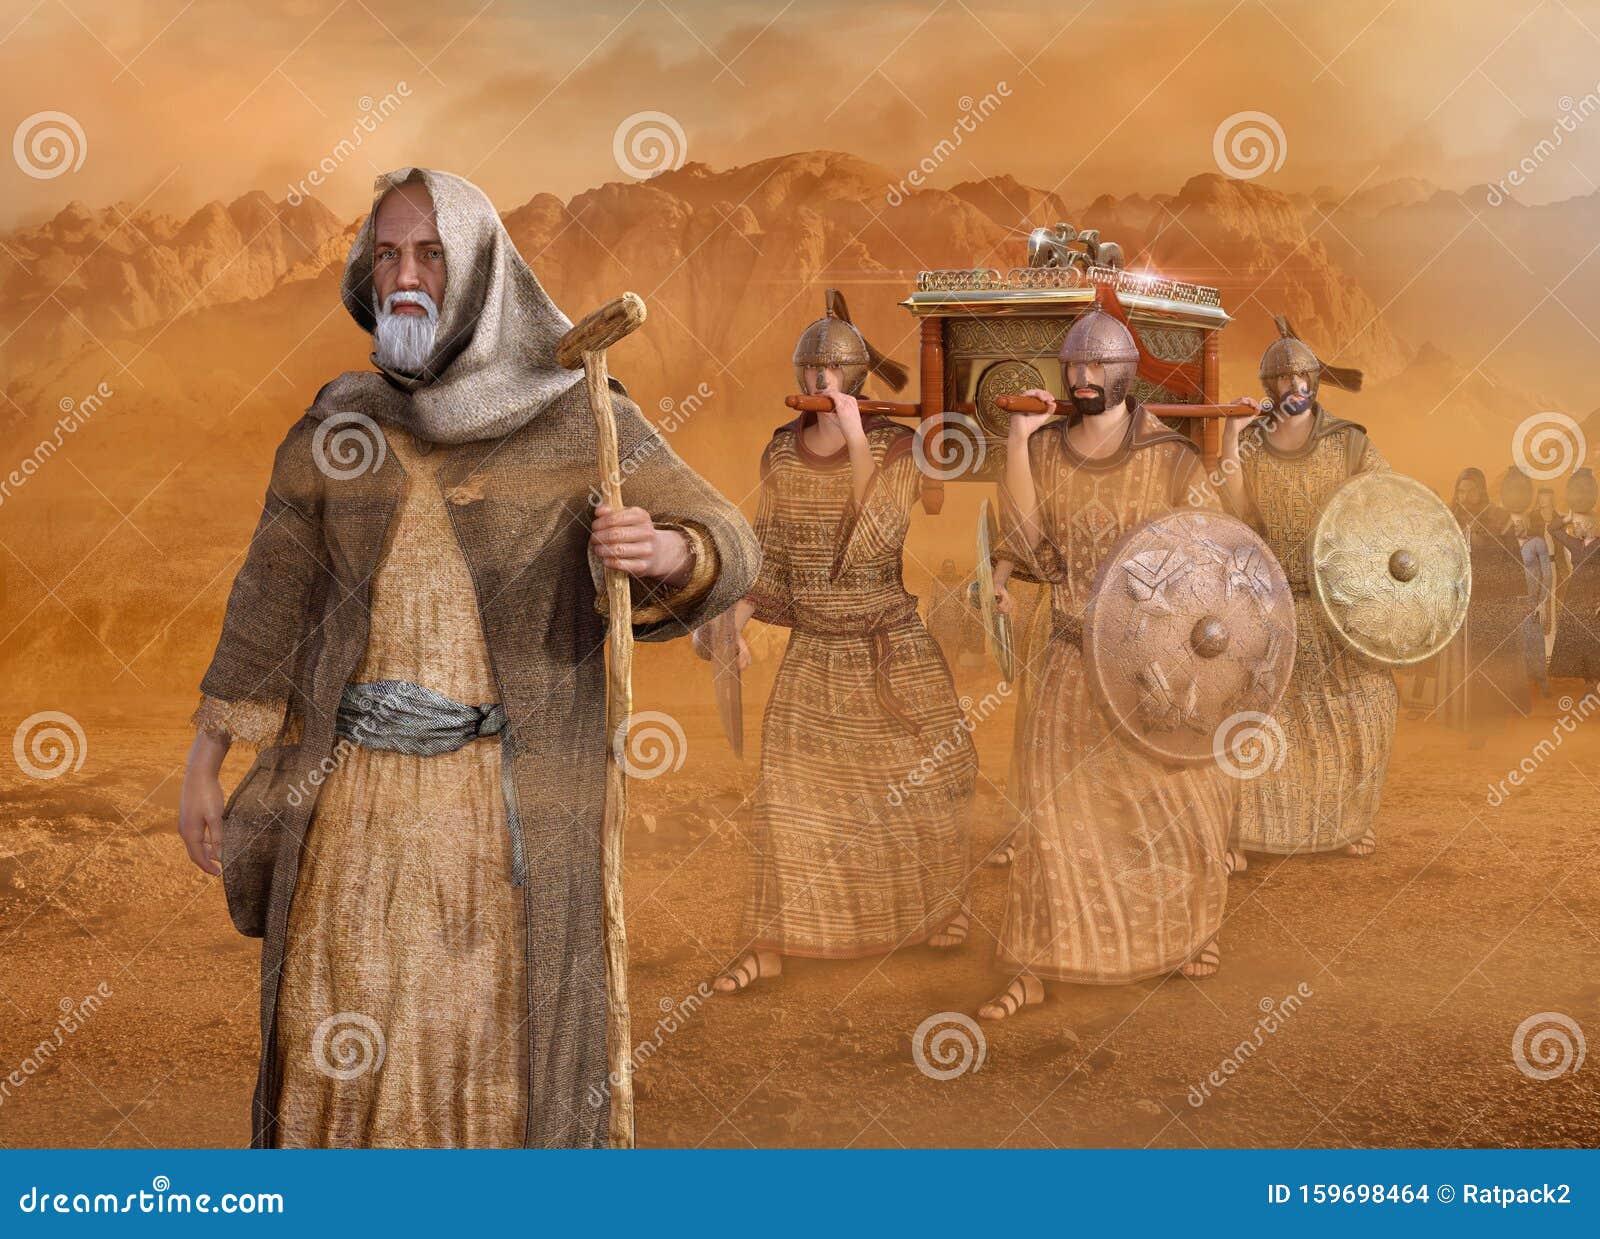 moses leads the isrealites through the desert sinai exodus